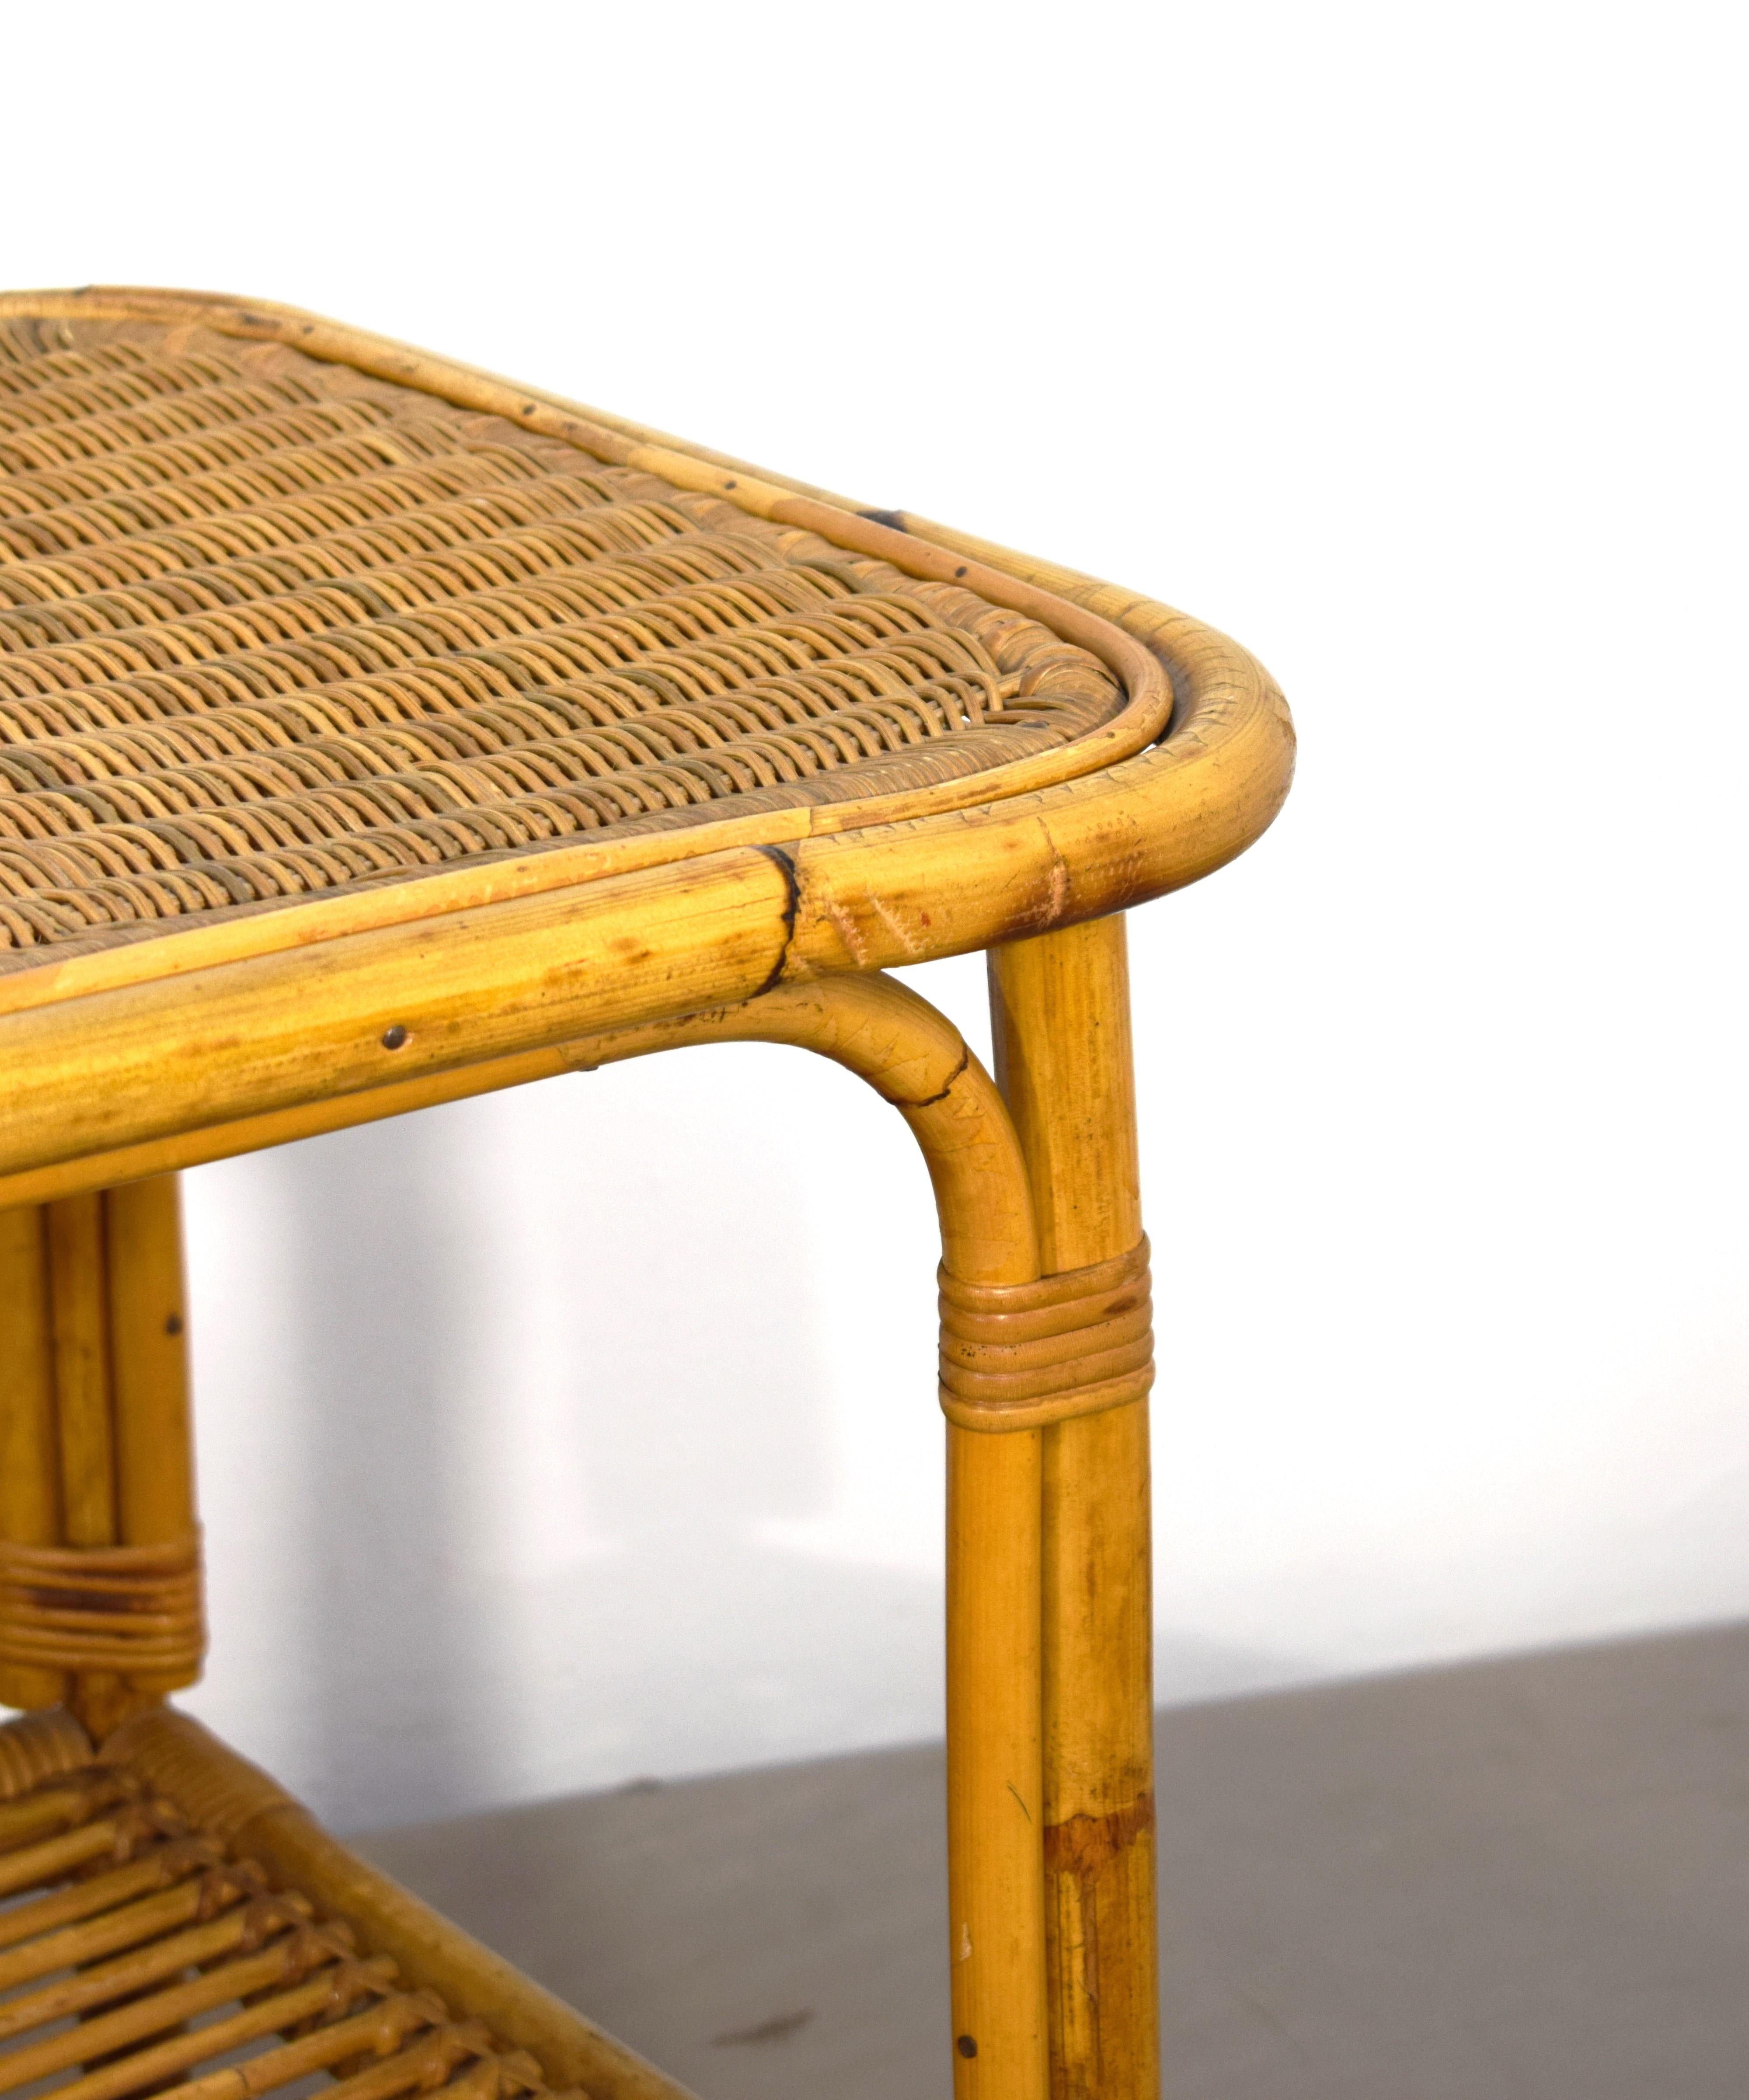 Table basse italienne en bambou, années 1960.
Dimensions : H= 55 cm ; L= 86 cm ; P= 50 cm.